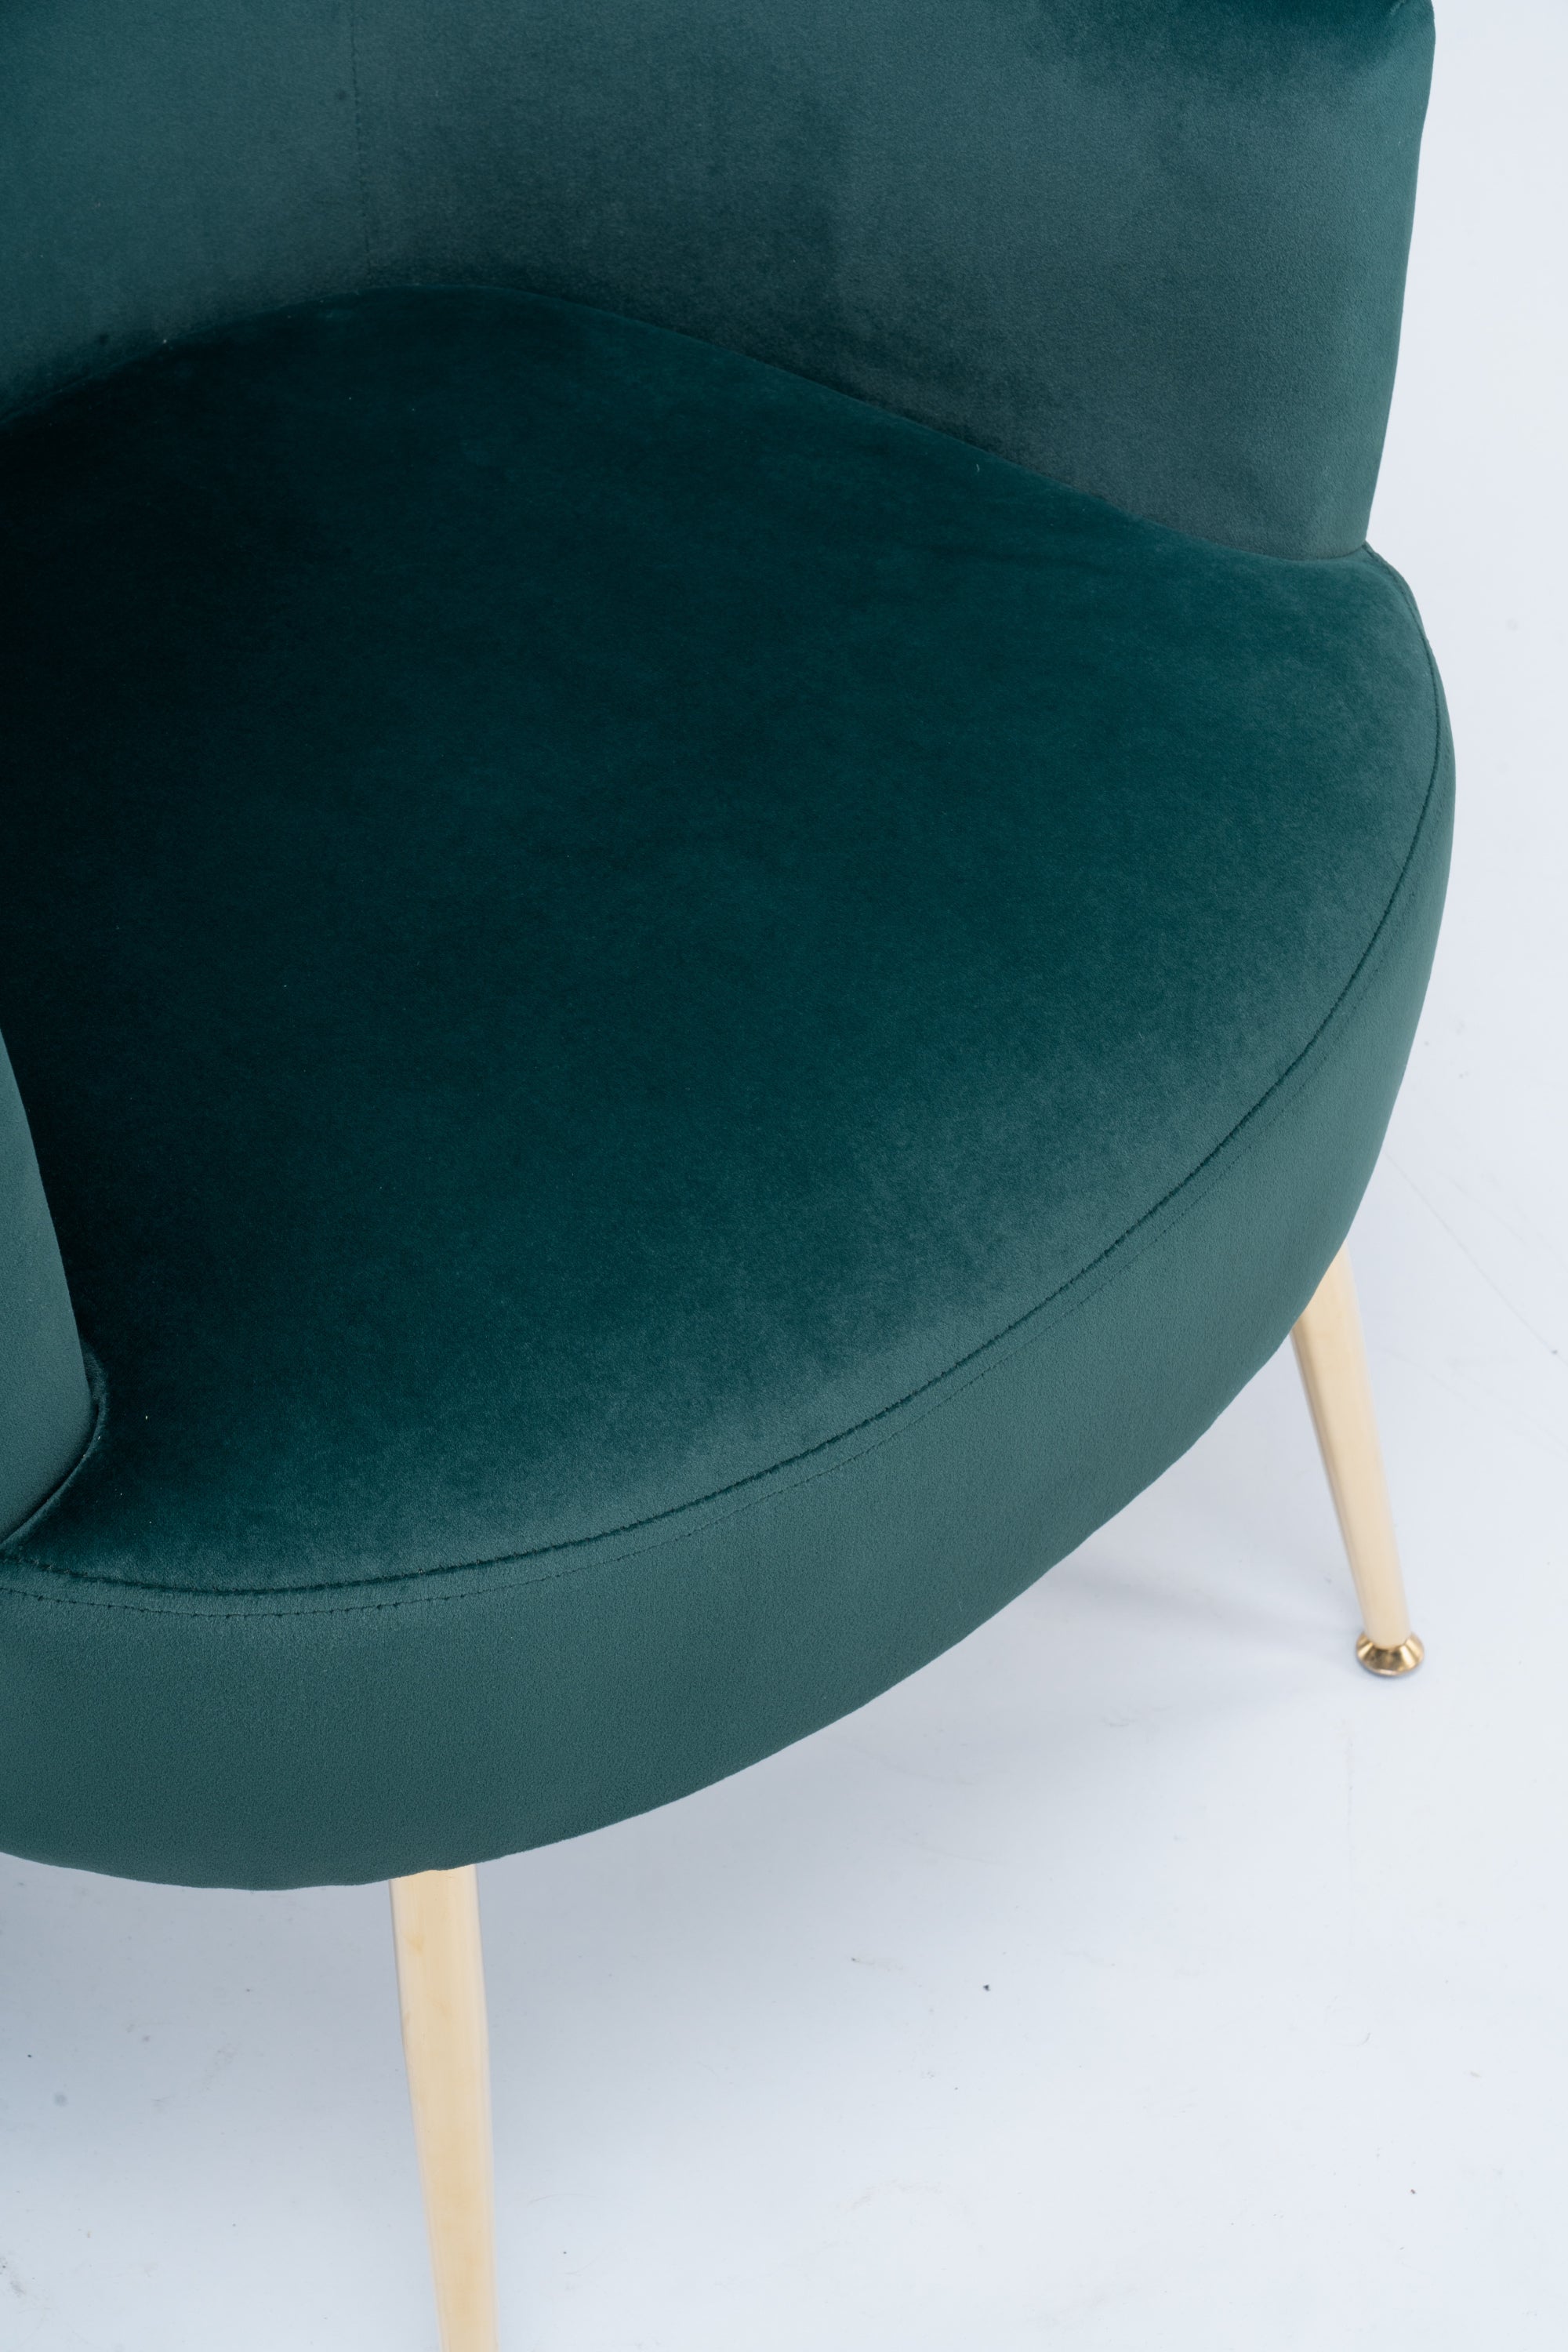 Velvet Armchair Accent Chair (Green)